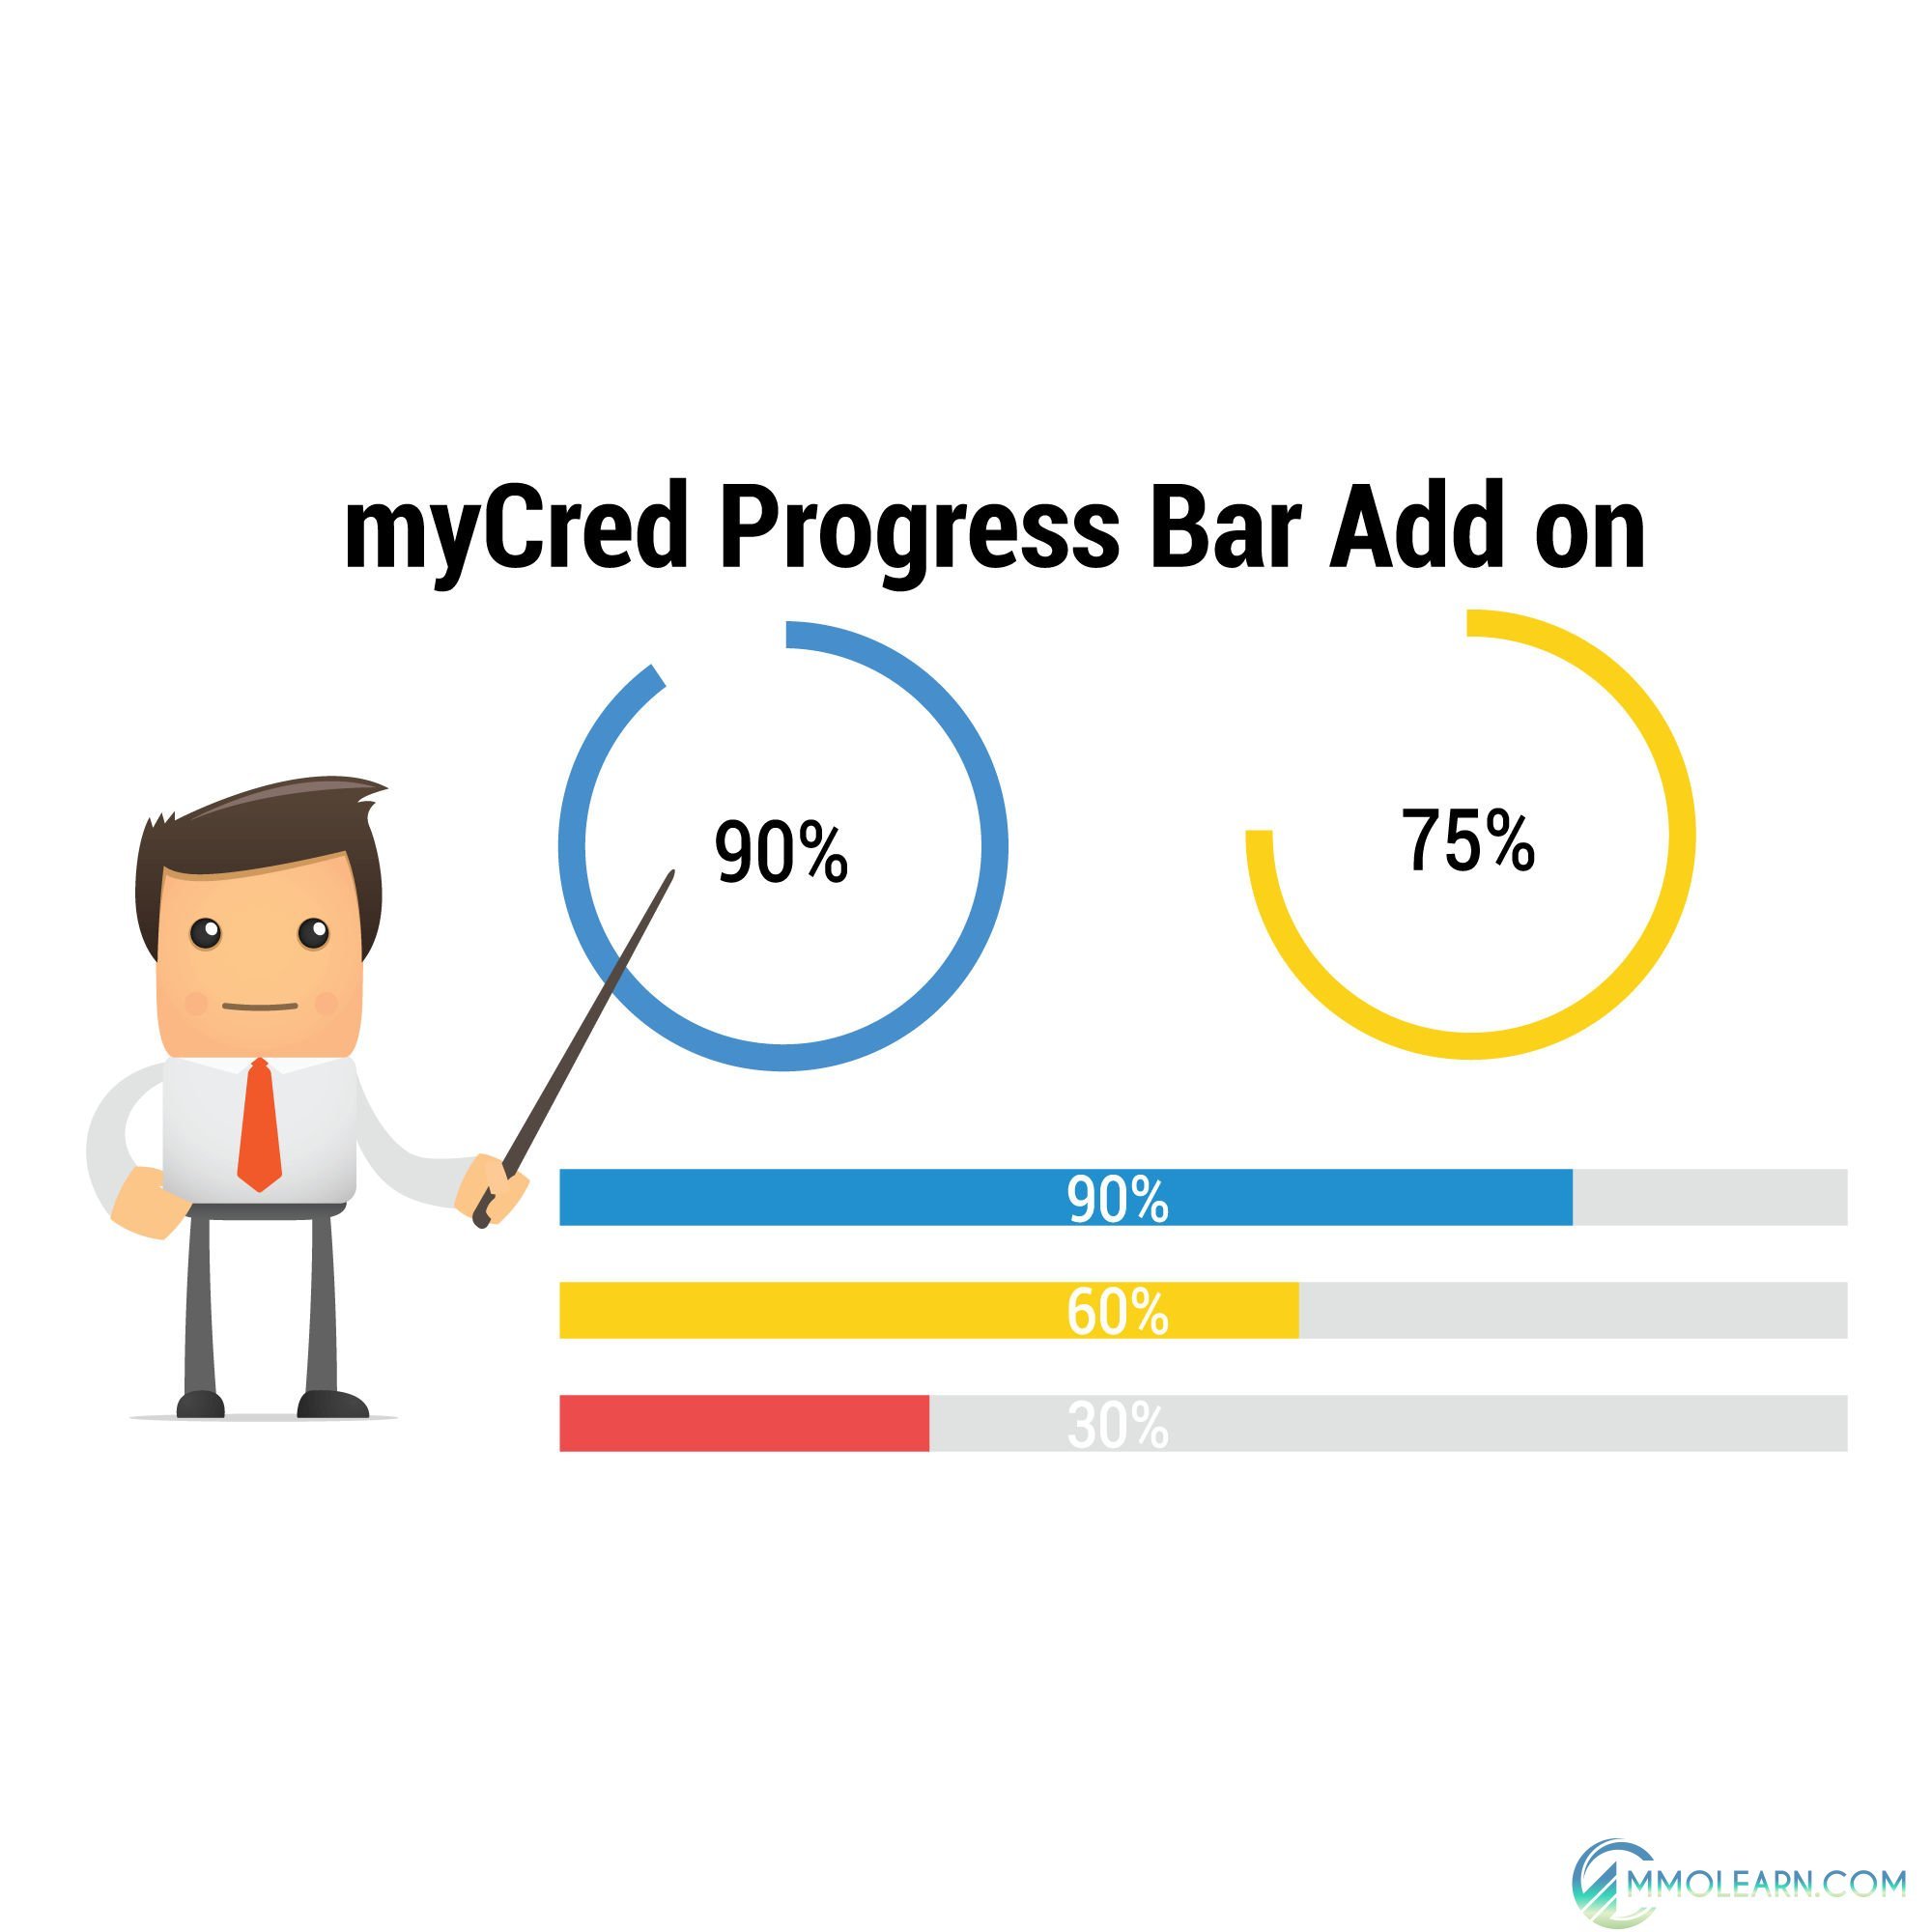 myCred Progress Bar Add on.jpg